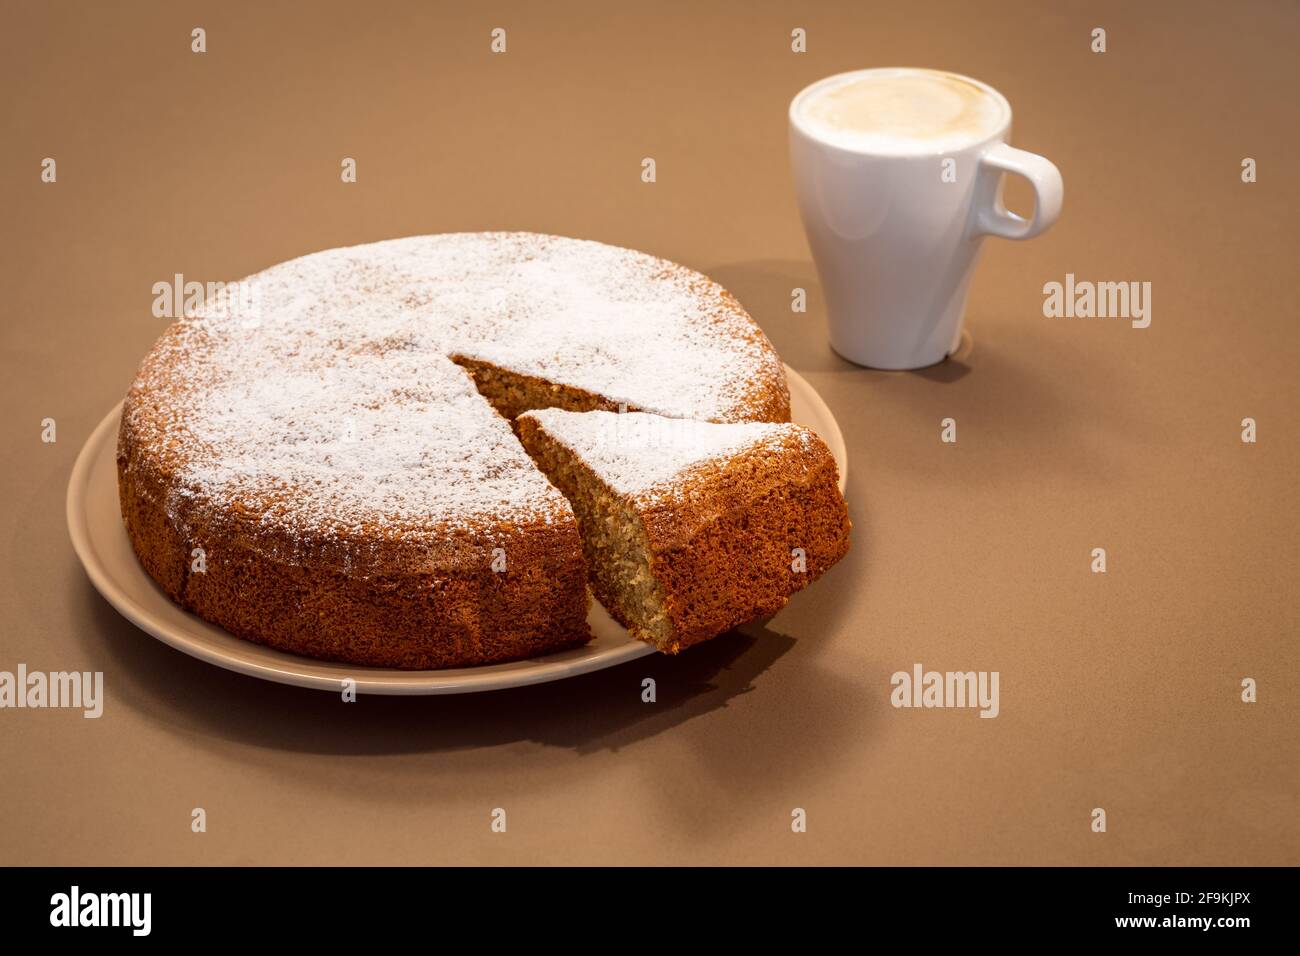 Ein uralter römischer Kuchen aus Mandeln und trockenem Brot Mit frischem Cappuccino (Antica torta alle mandorle e pane) Stockfoto